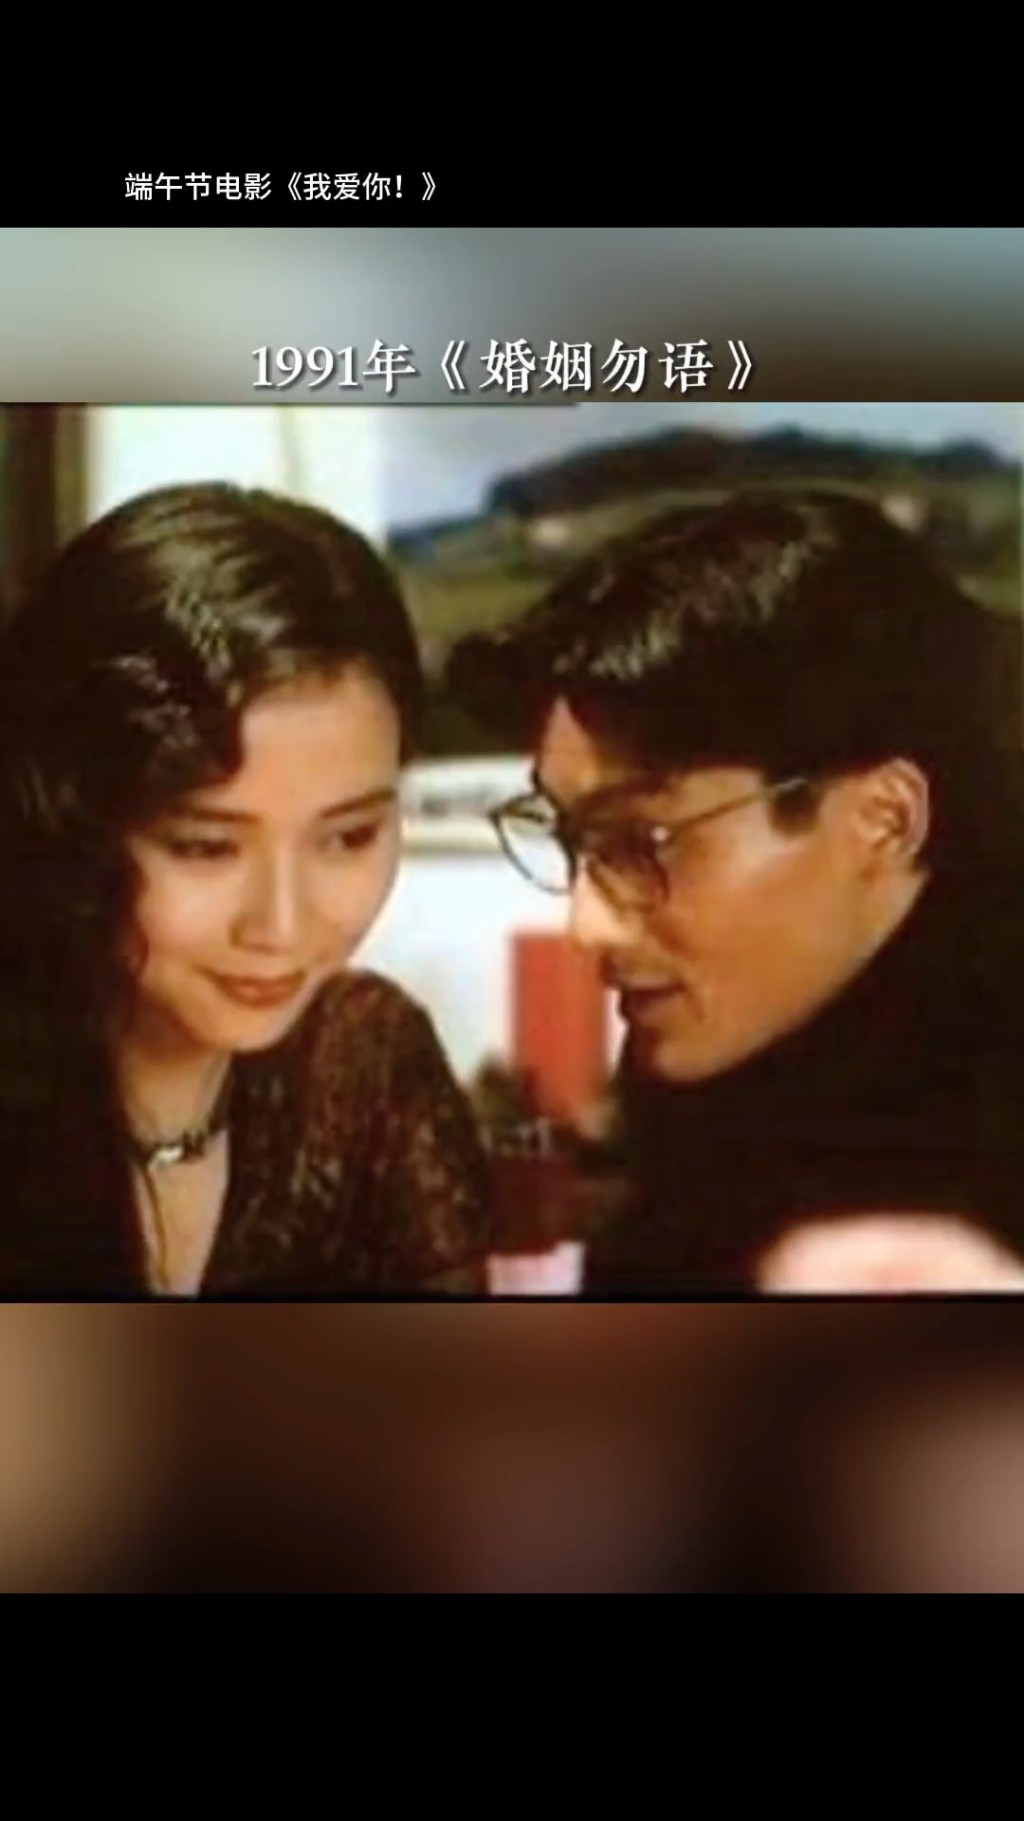 梁家辉与叶童曾合拍1991年电影《婚姻勿语》，第三度荣膺影后。